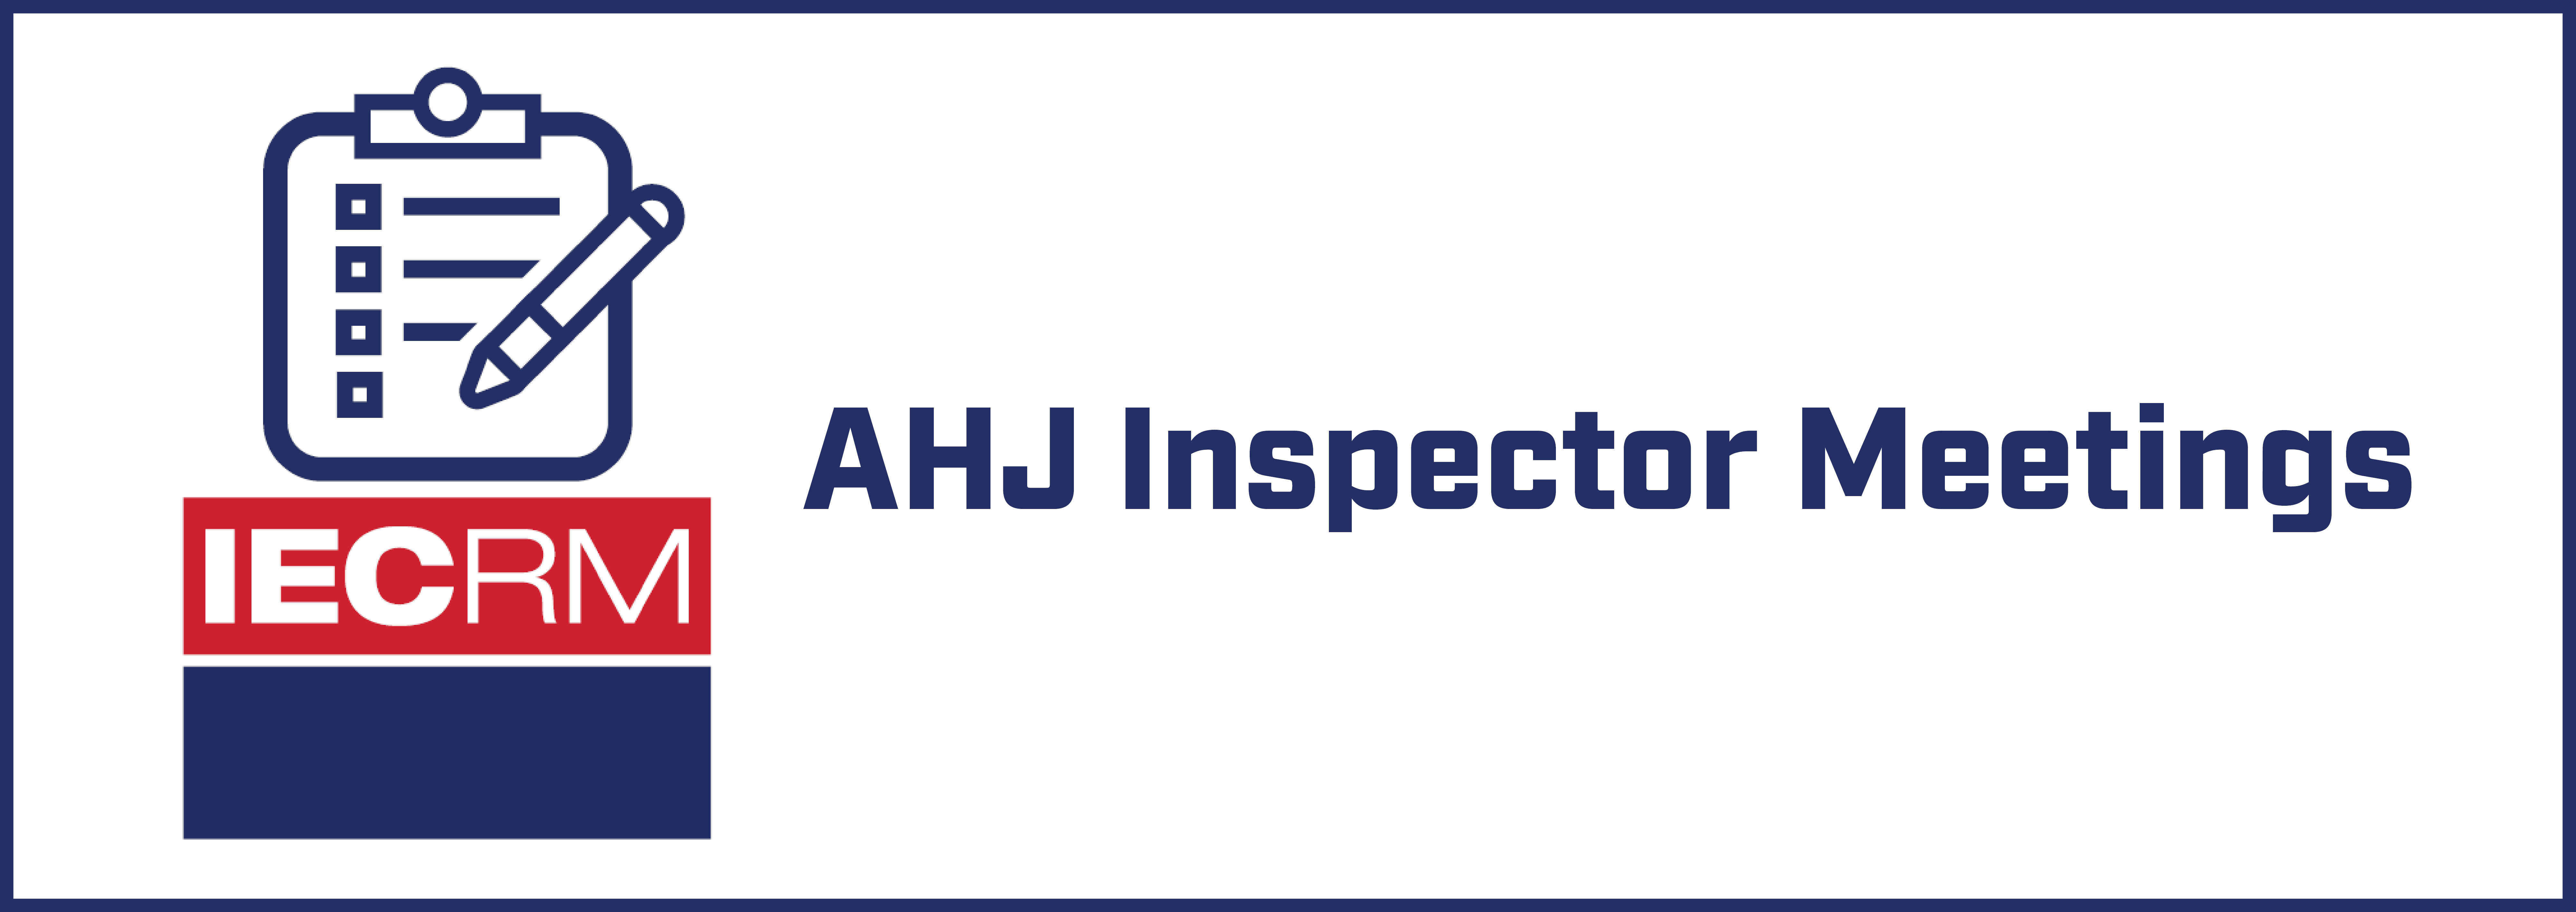 IECRM AHJ Inspectors Meeting - September 2022